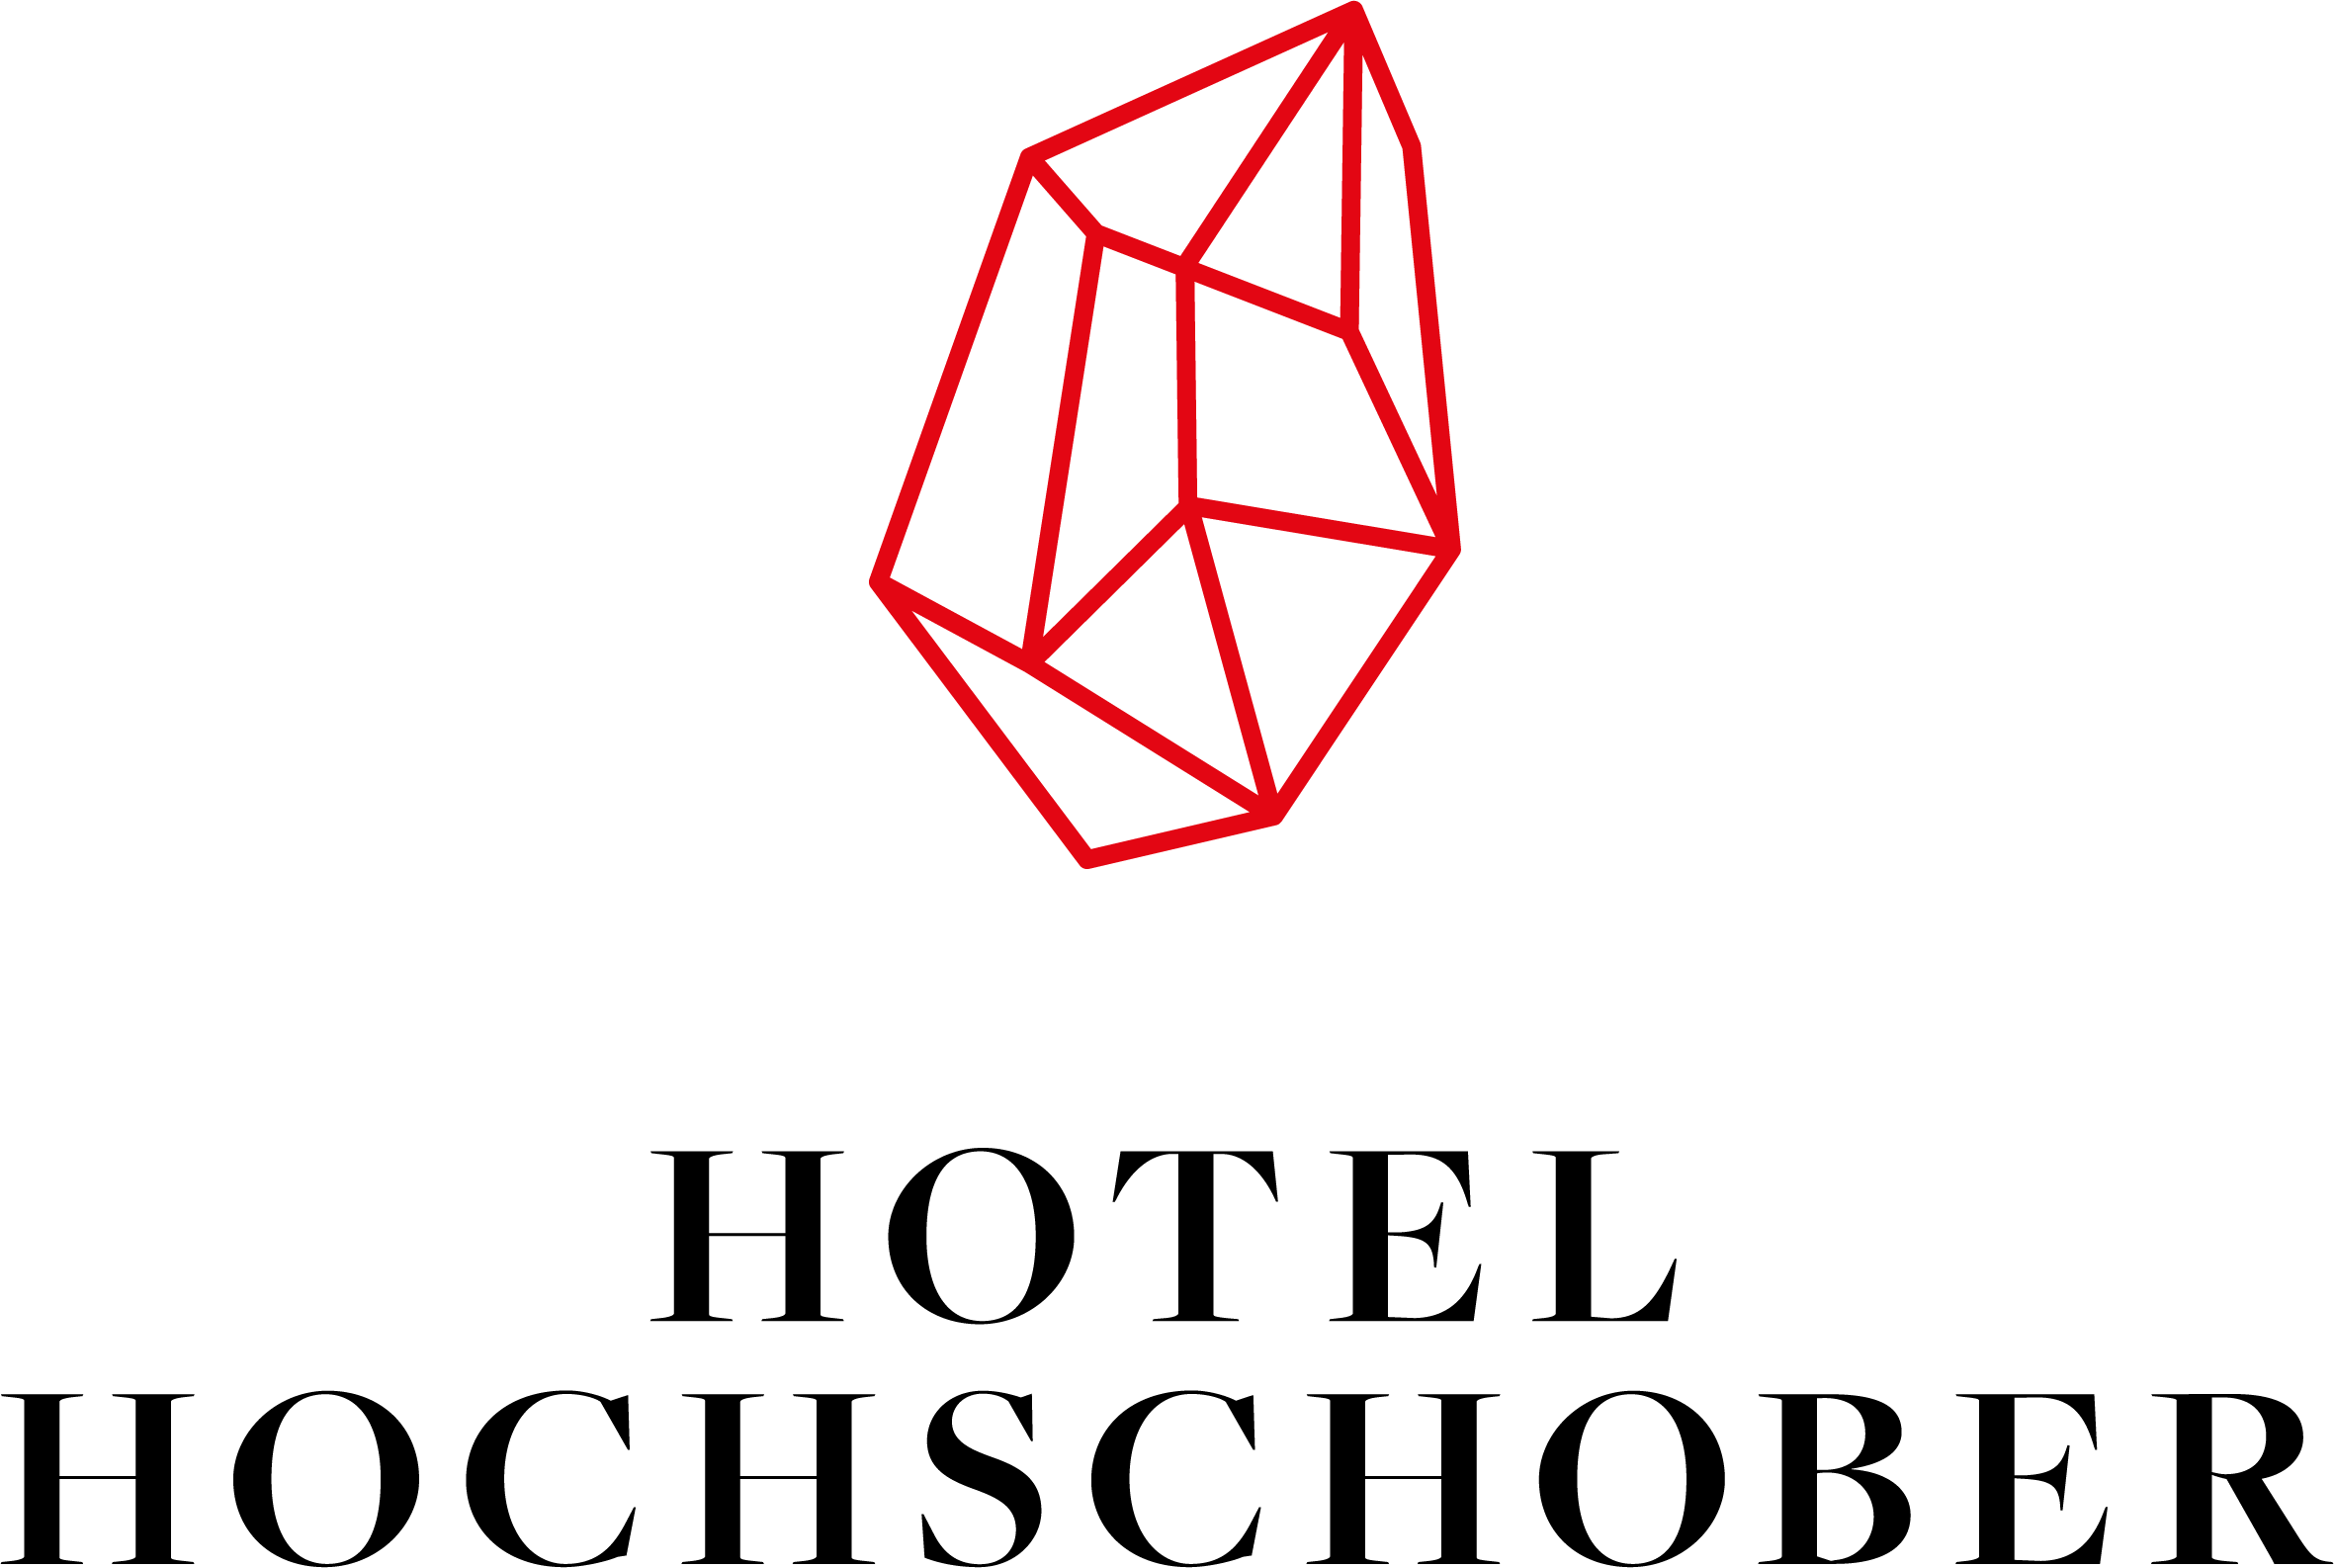 Hotel_Hochschober_Wort-Bildmarke_Rot-Schwarz_RZ